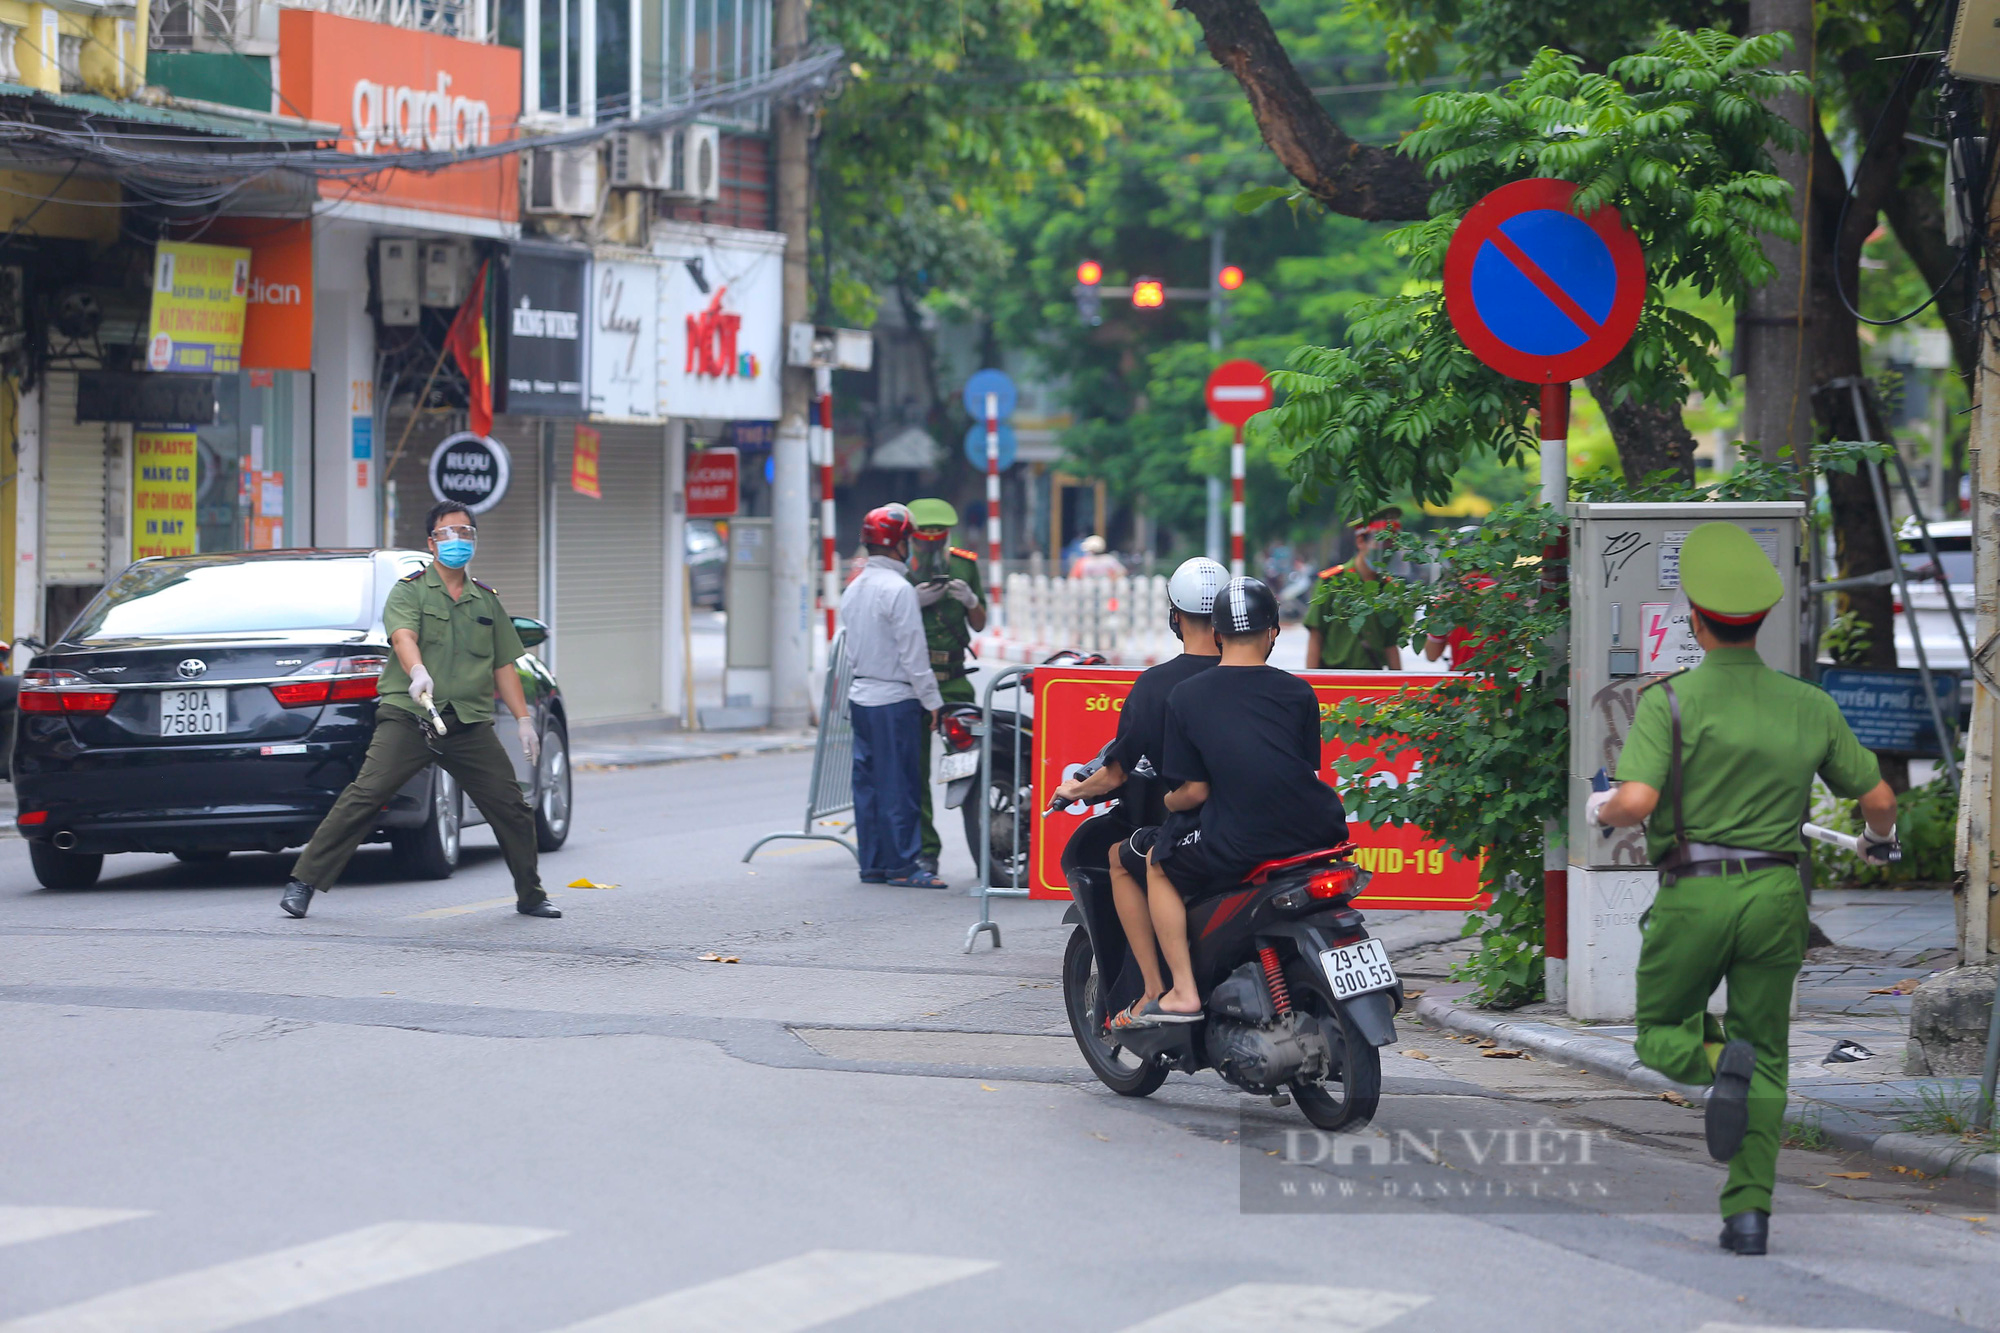 Không đeo khẩu trang, quay đầu xe bỏ chạy khi thấy chốt kiểm soát người đi đường ở Hà Nội - Ảnh 9.